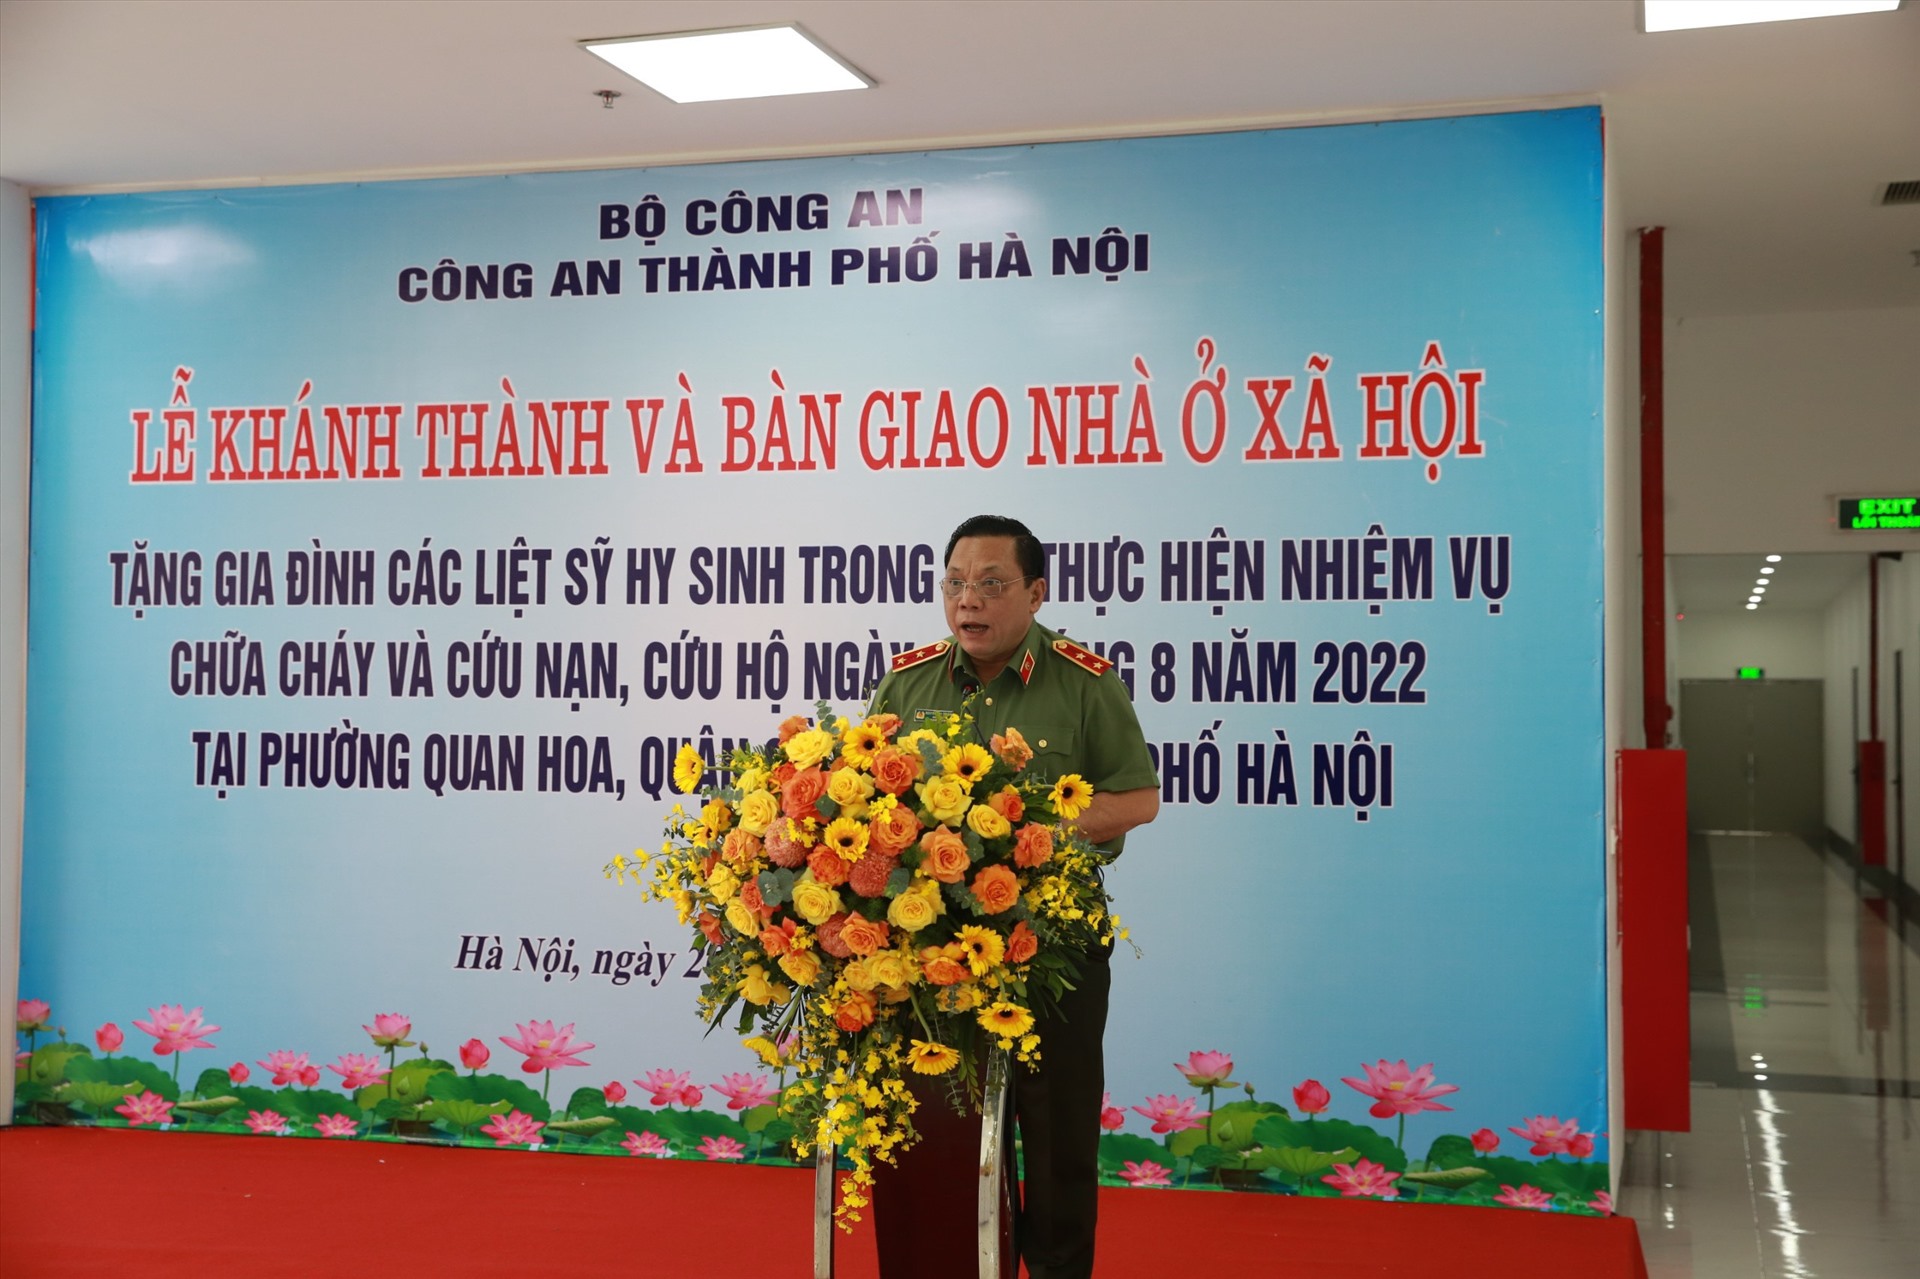 Trung tướng Nguyễn Hải Trung - Bí thư Đảng uỷ, Giám đốc Công an TP Hà Nội. Ảnh: Công an TP Hà Nội